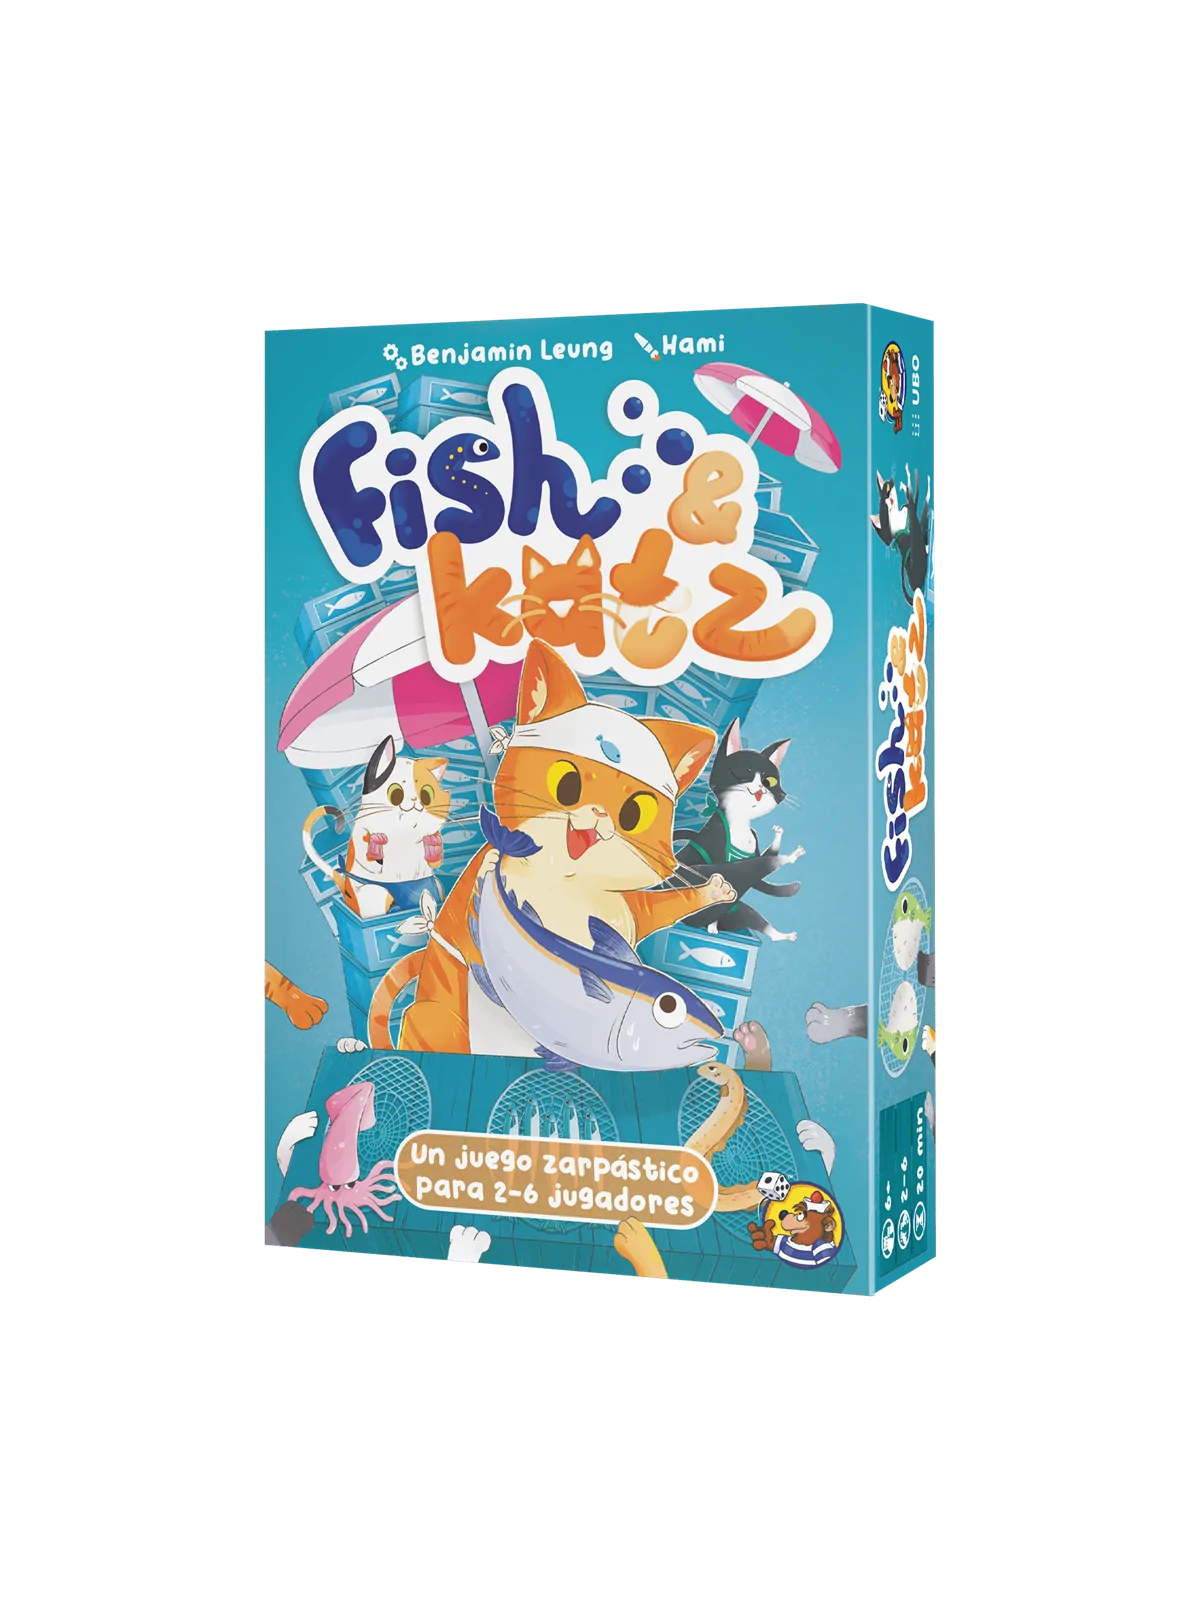 Comprar Fish & Katz barato al mejor precio 22,49 € de HeidelBar Games